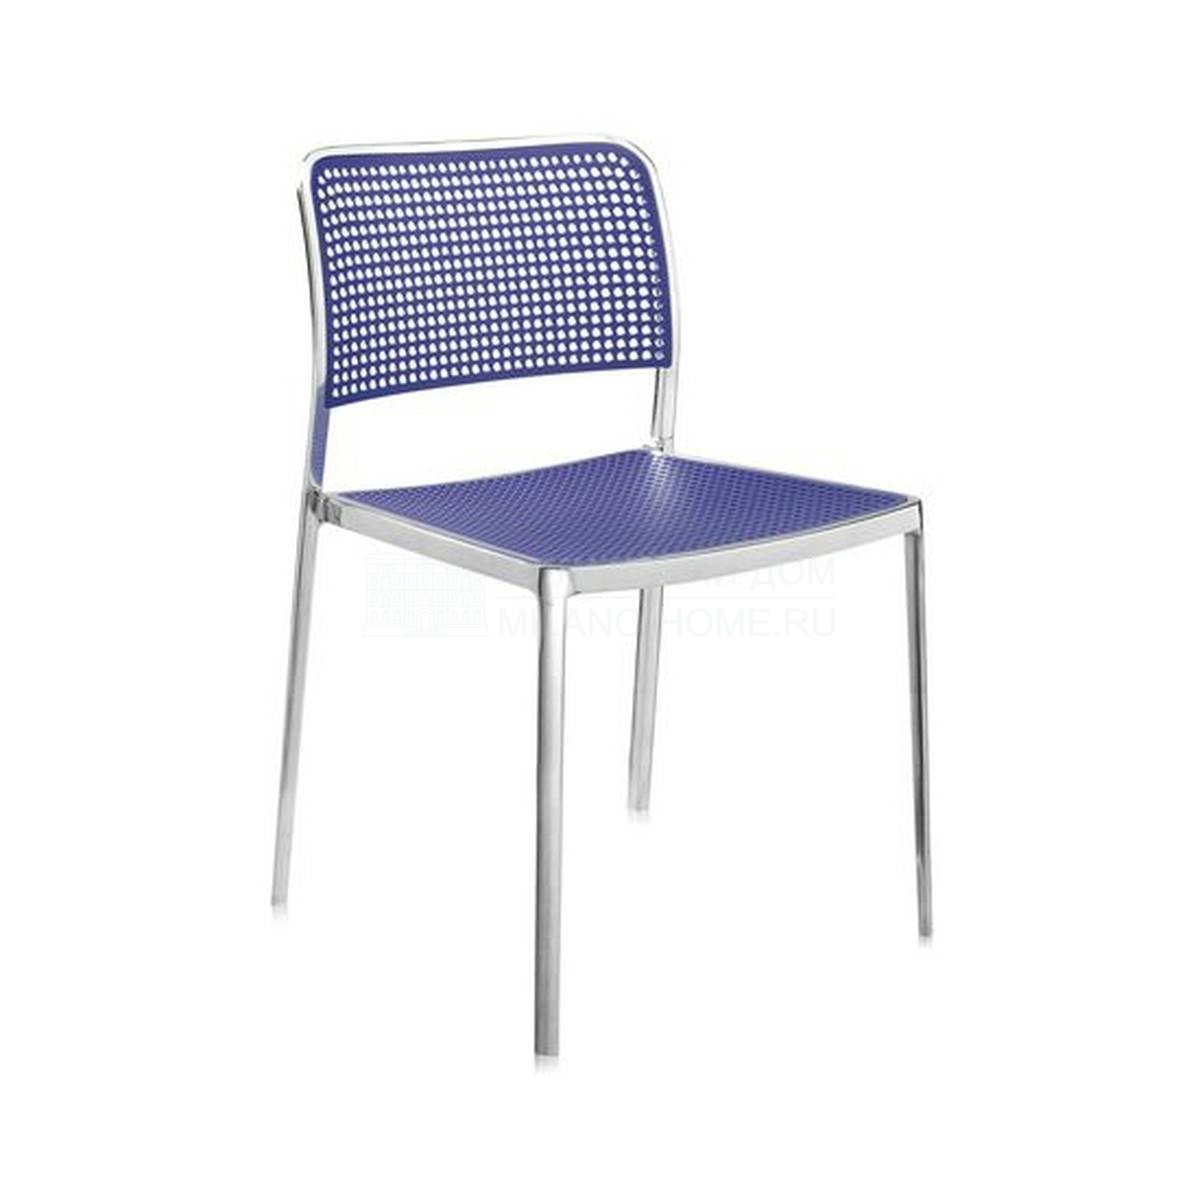 Металлический / Пластиковый стул Audrey sedia due из Италии фабрики KARTELL